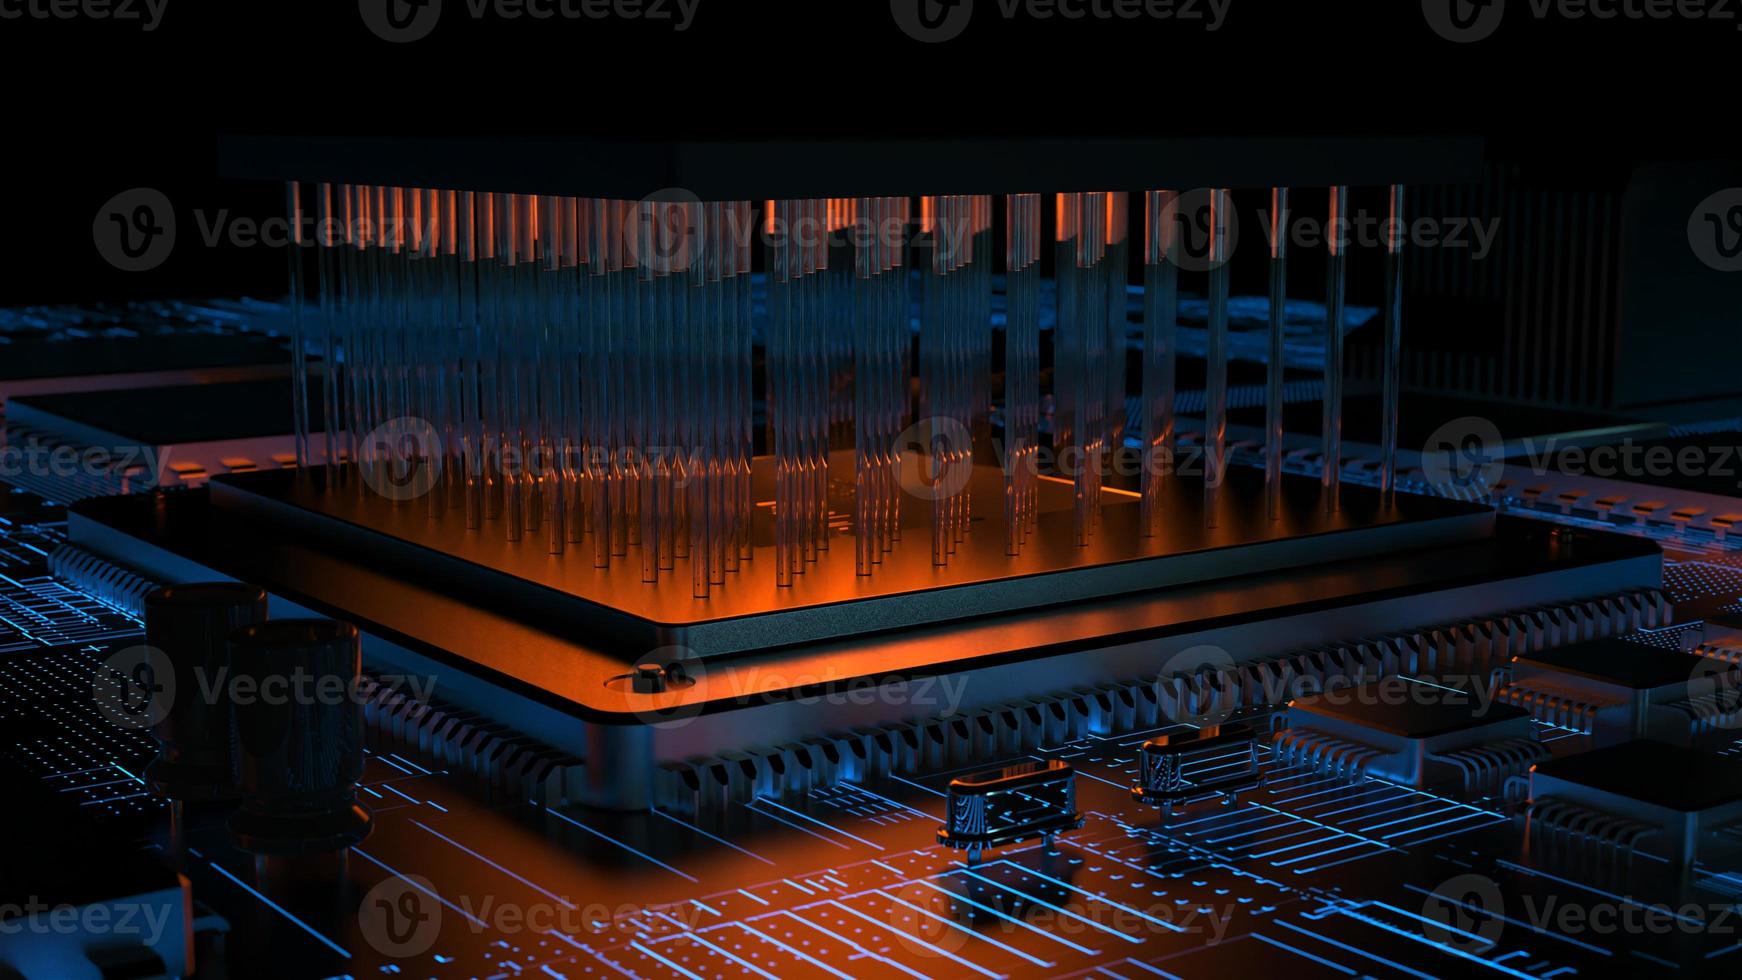 processorchip på ett kretskort i rött bakgrundsbelysning. 3D-illustration på ämnet teknik och kraften i artificiell intelligens. foto